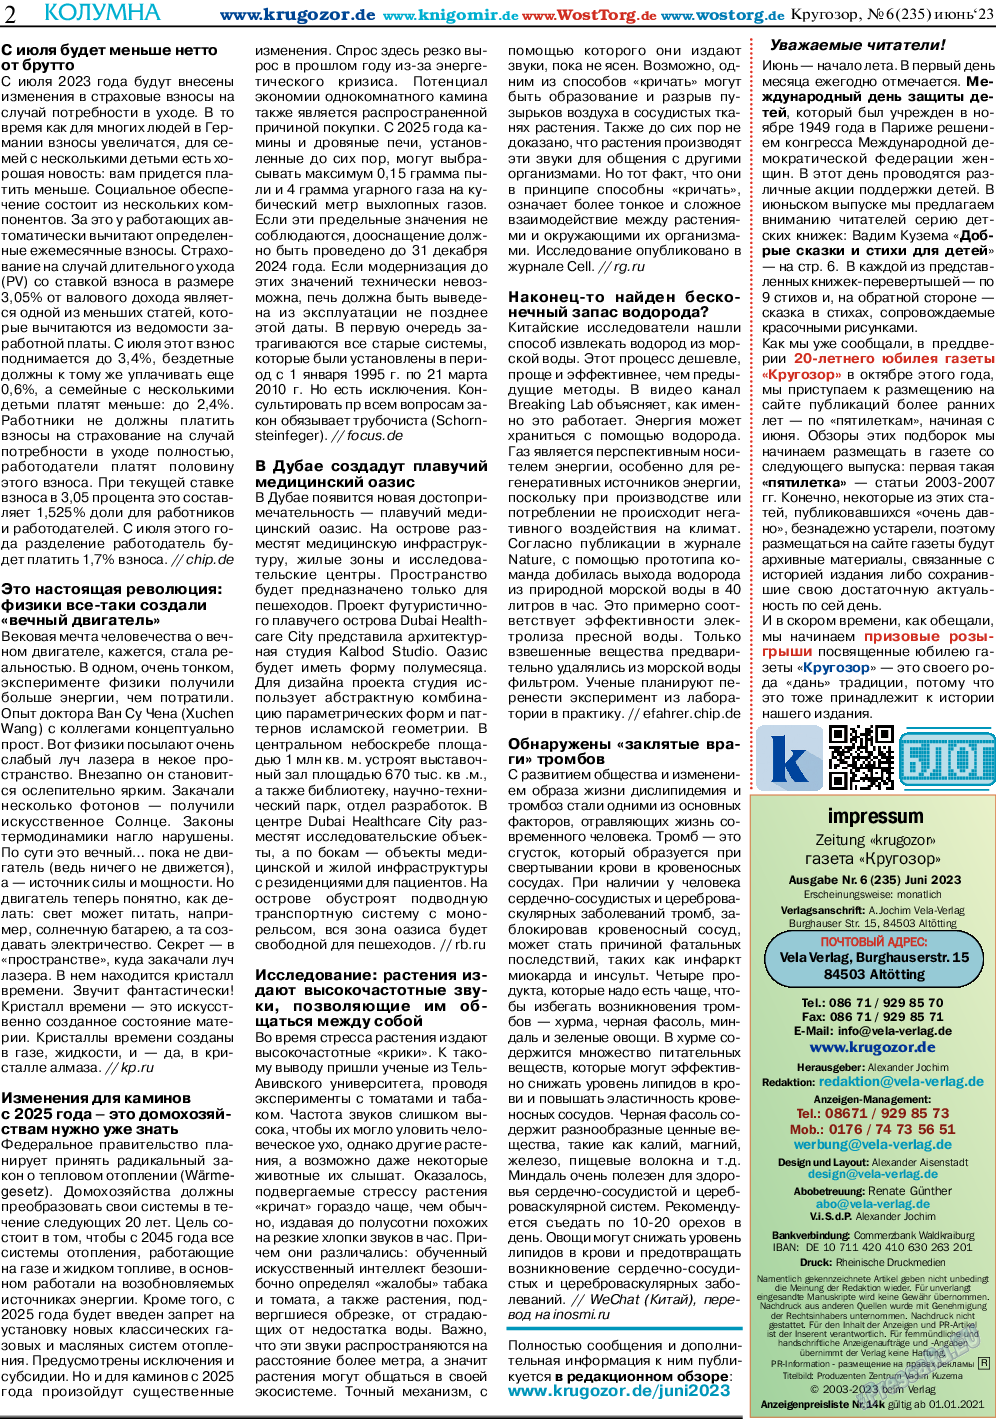 Кругозор, газета. 2023 №6 стр.2